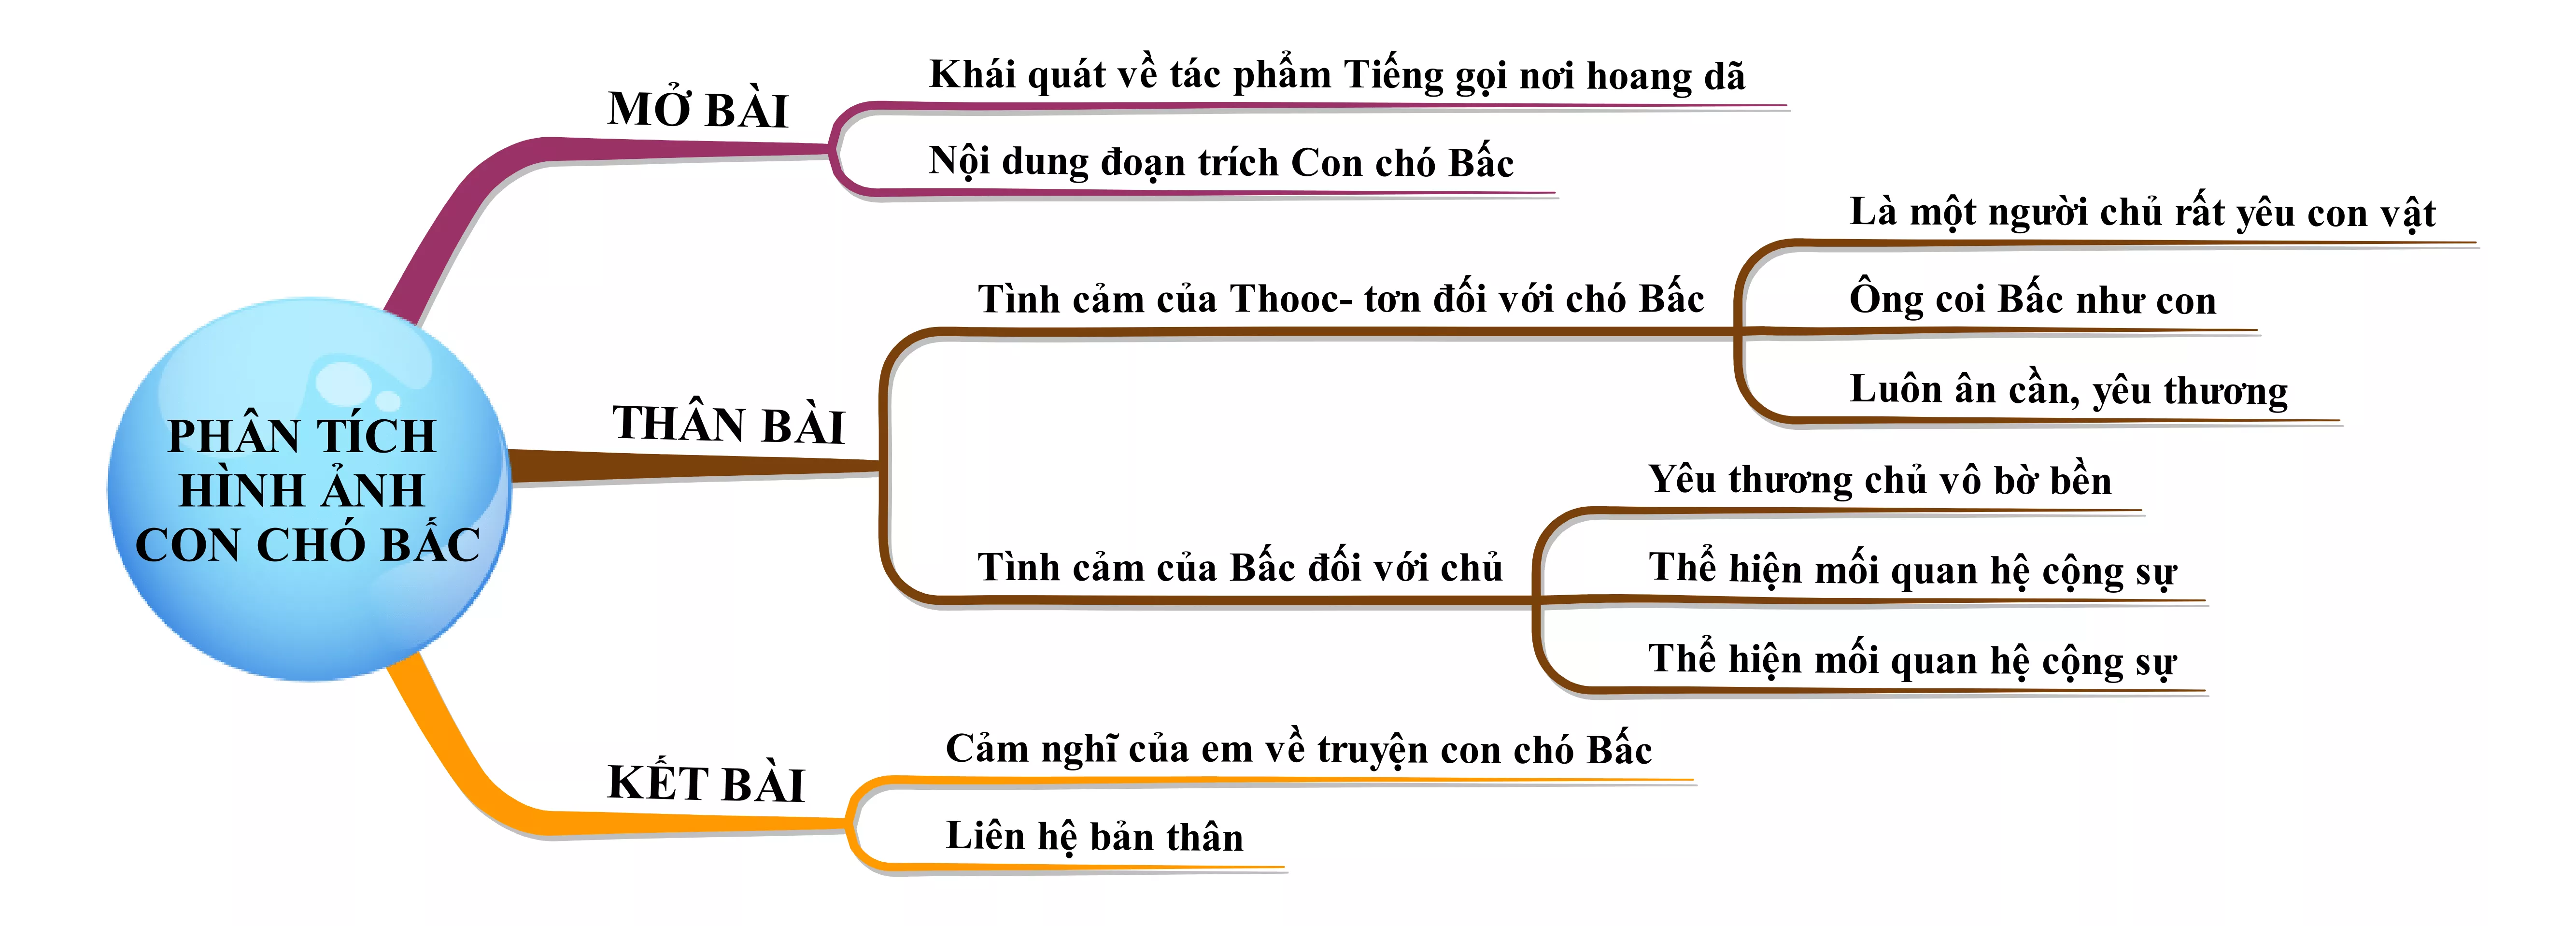 Phân tích hình ảnh con chó Bấc năm 2021 Phan Tich Hinh Anh Con Cho Bac Nam 2021 18409